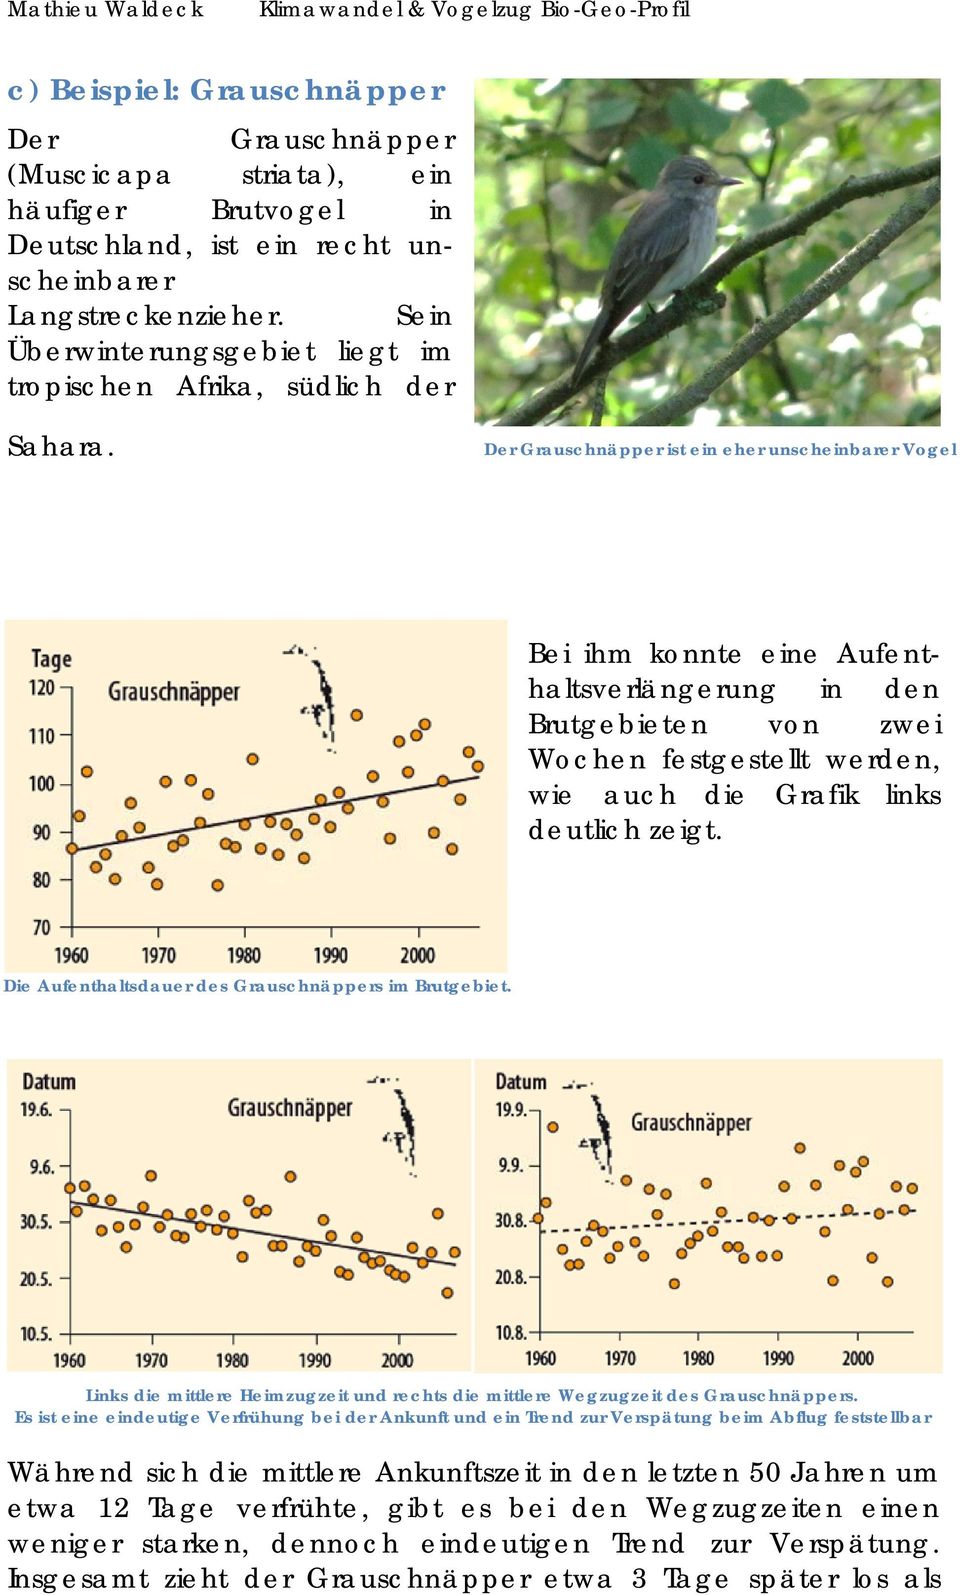 Der Grauschnäpper ist ein eher unscheinbarer Vogel Bei ihm konnte eine Aufenthaltsverlängerung in den Brutgebieten von zwei Wochen festgestellt werden, wie auch die Grafik links deutlich zeigt.